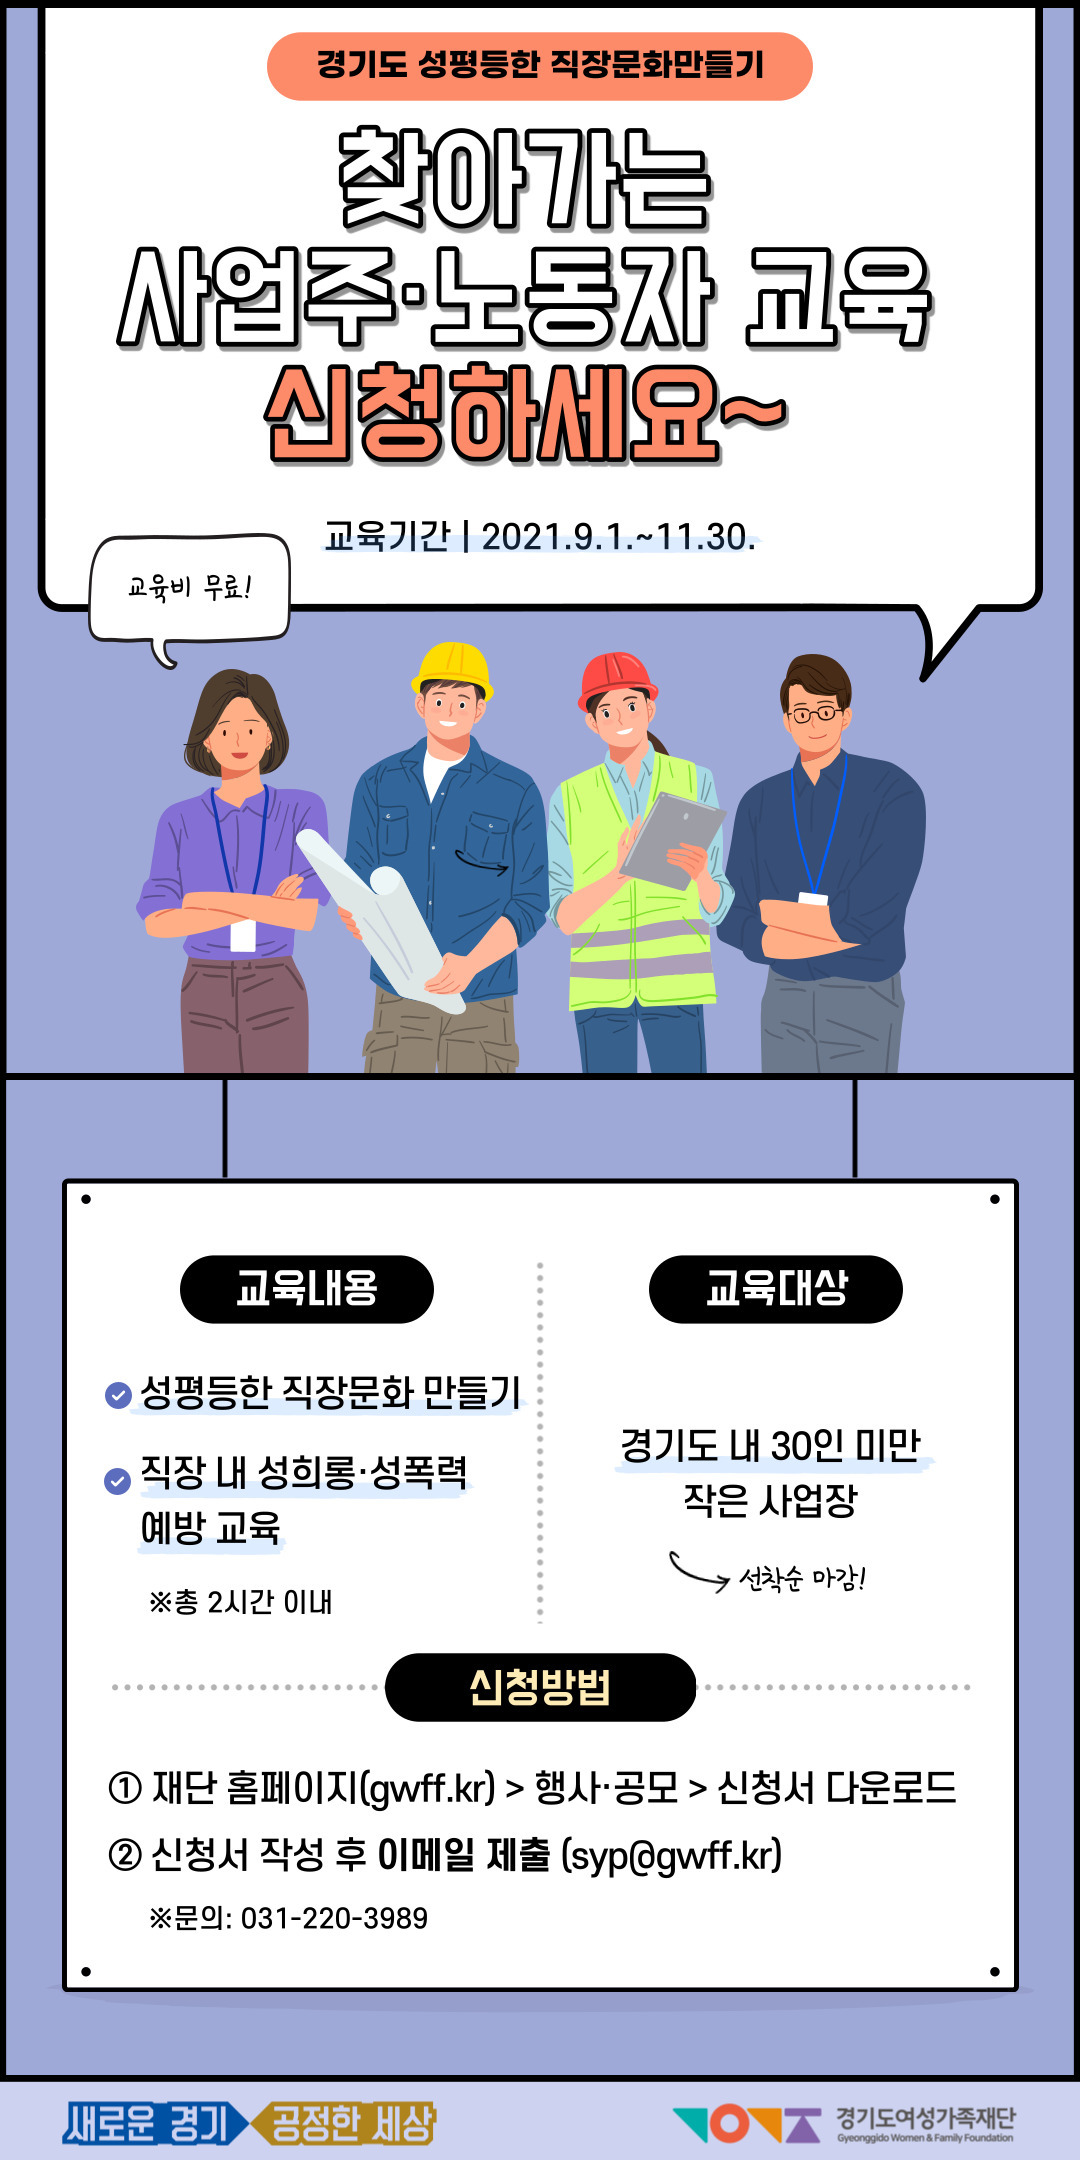 [경기도] 성평등한 직장문화 만들기 교육신청기간 연장안내 이미지1